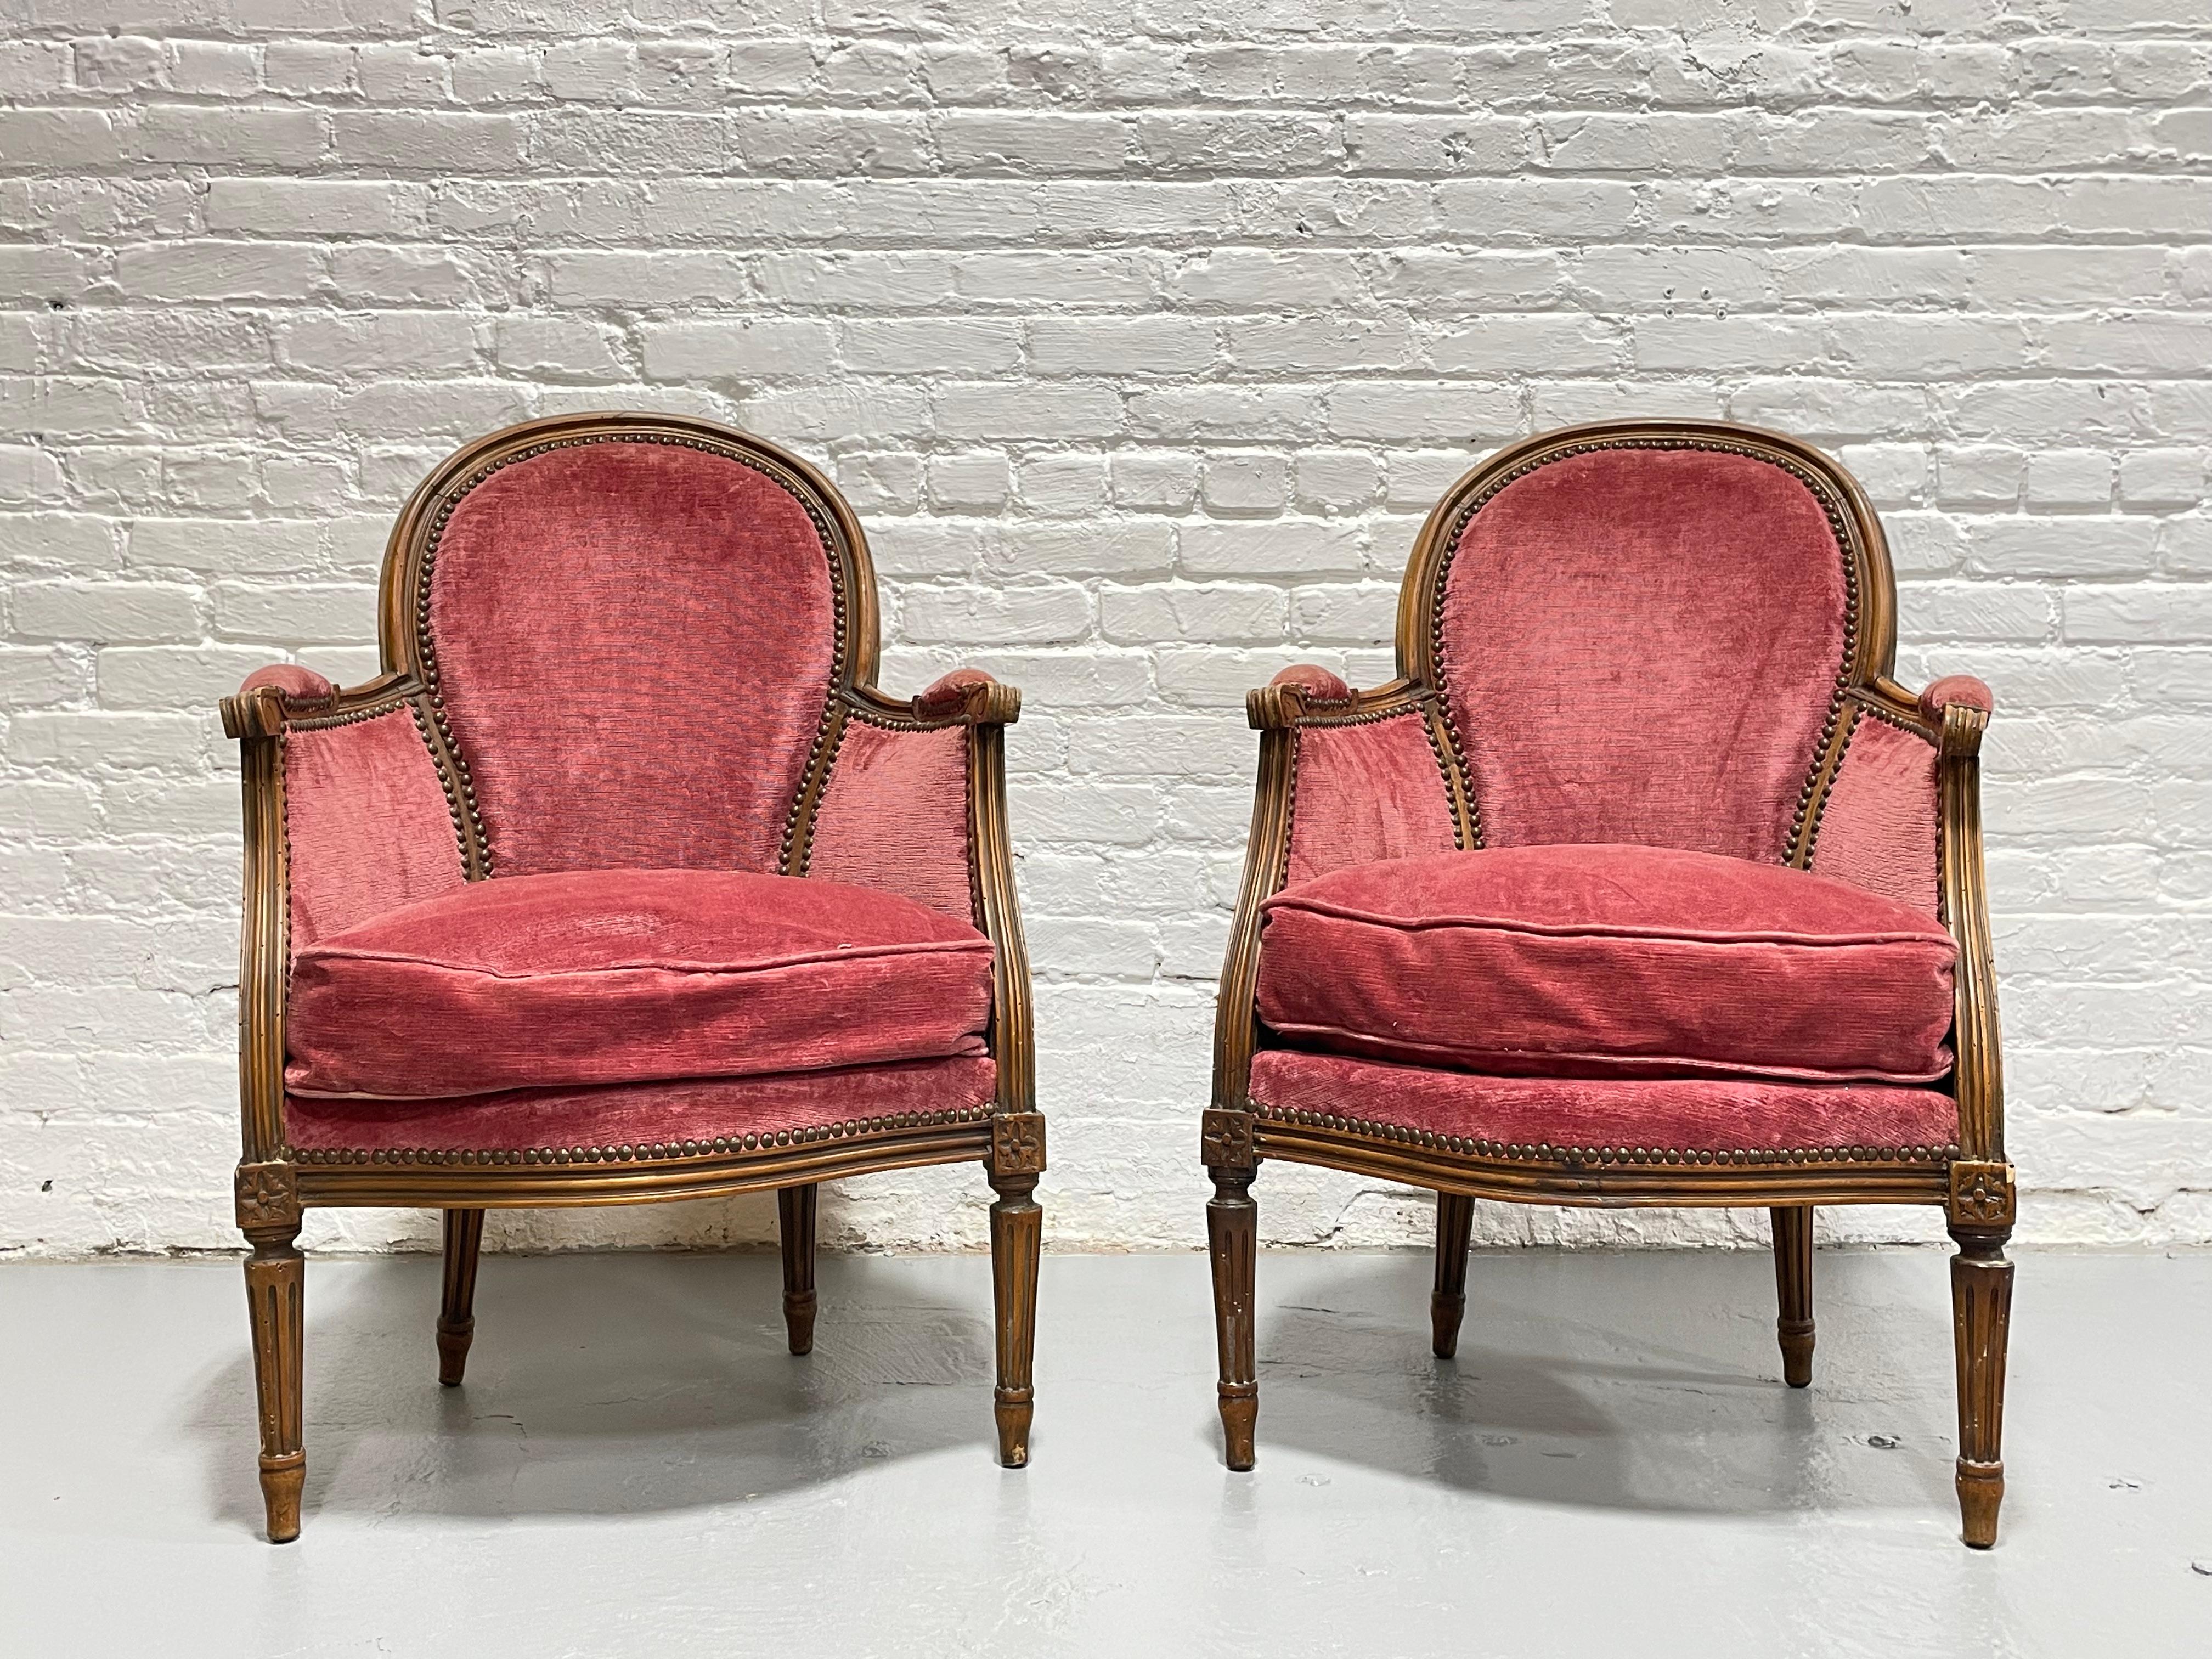 Magnifique paire de fauteuils Bergère de style Louis XV, c. 1940. Rembourré dans un joli tissu de velours rose, il est superbement confortable et bien rembourré, avec un excellent soutien. La chaise est dotée d'accoudoirs paddés, de pieds fuselés